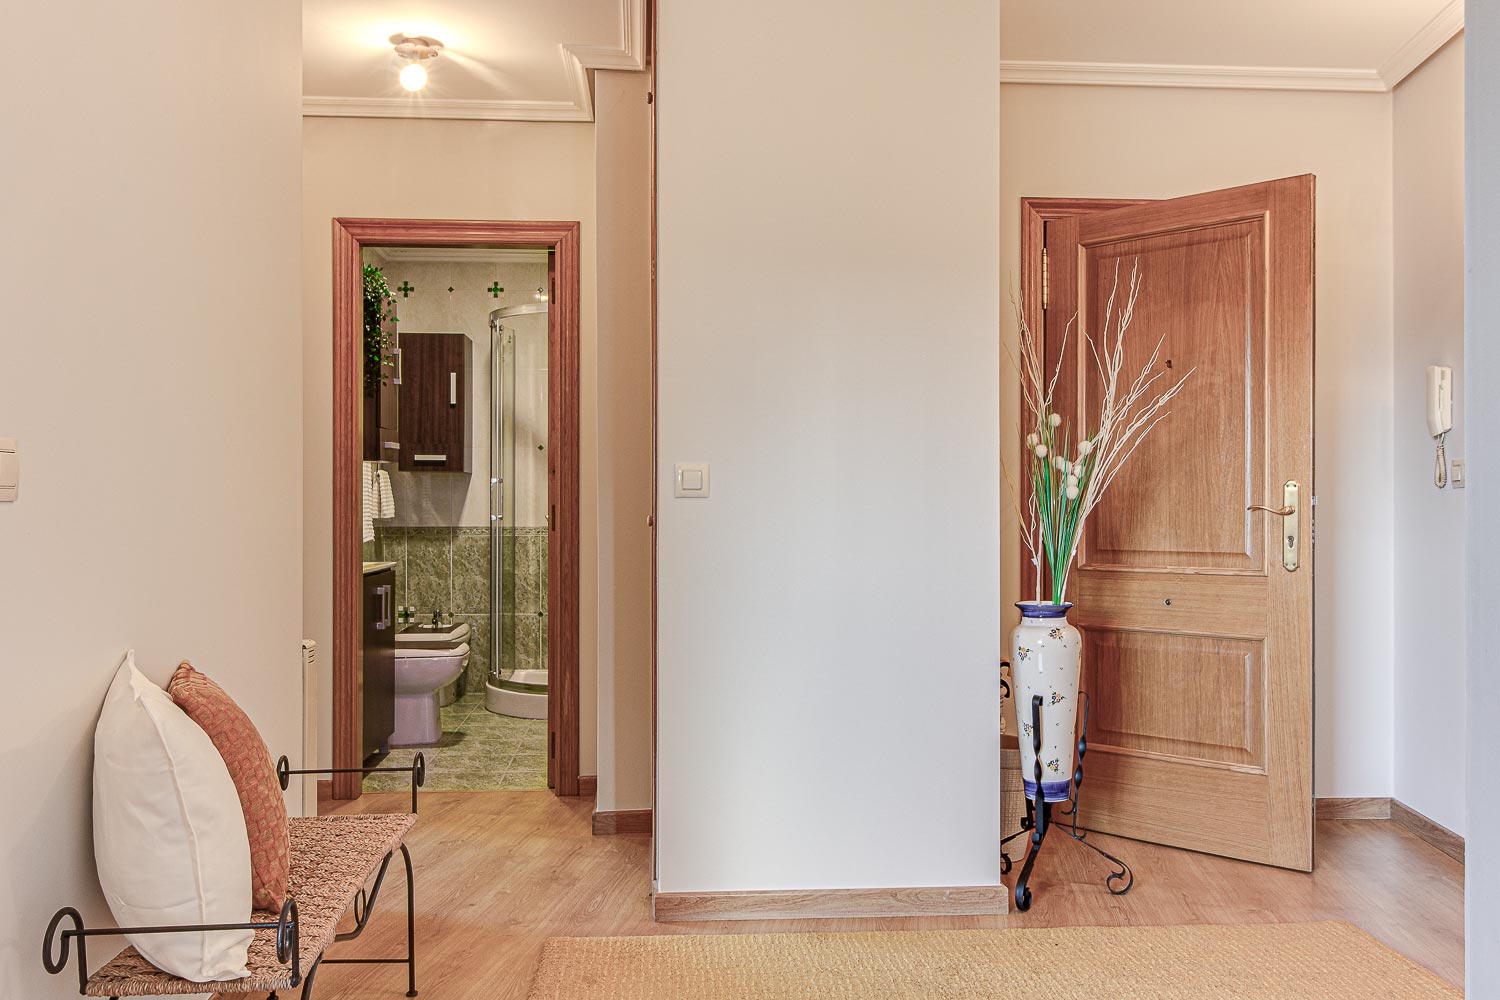 Espacio de recibidor en piso de Vilaboa_ Al fondo se ve el cuarto de baño y la puerta de entrada entreabierta_Home Staging